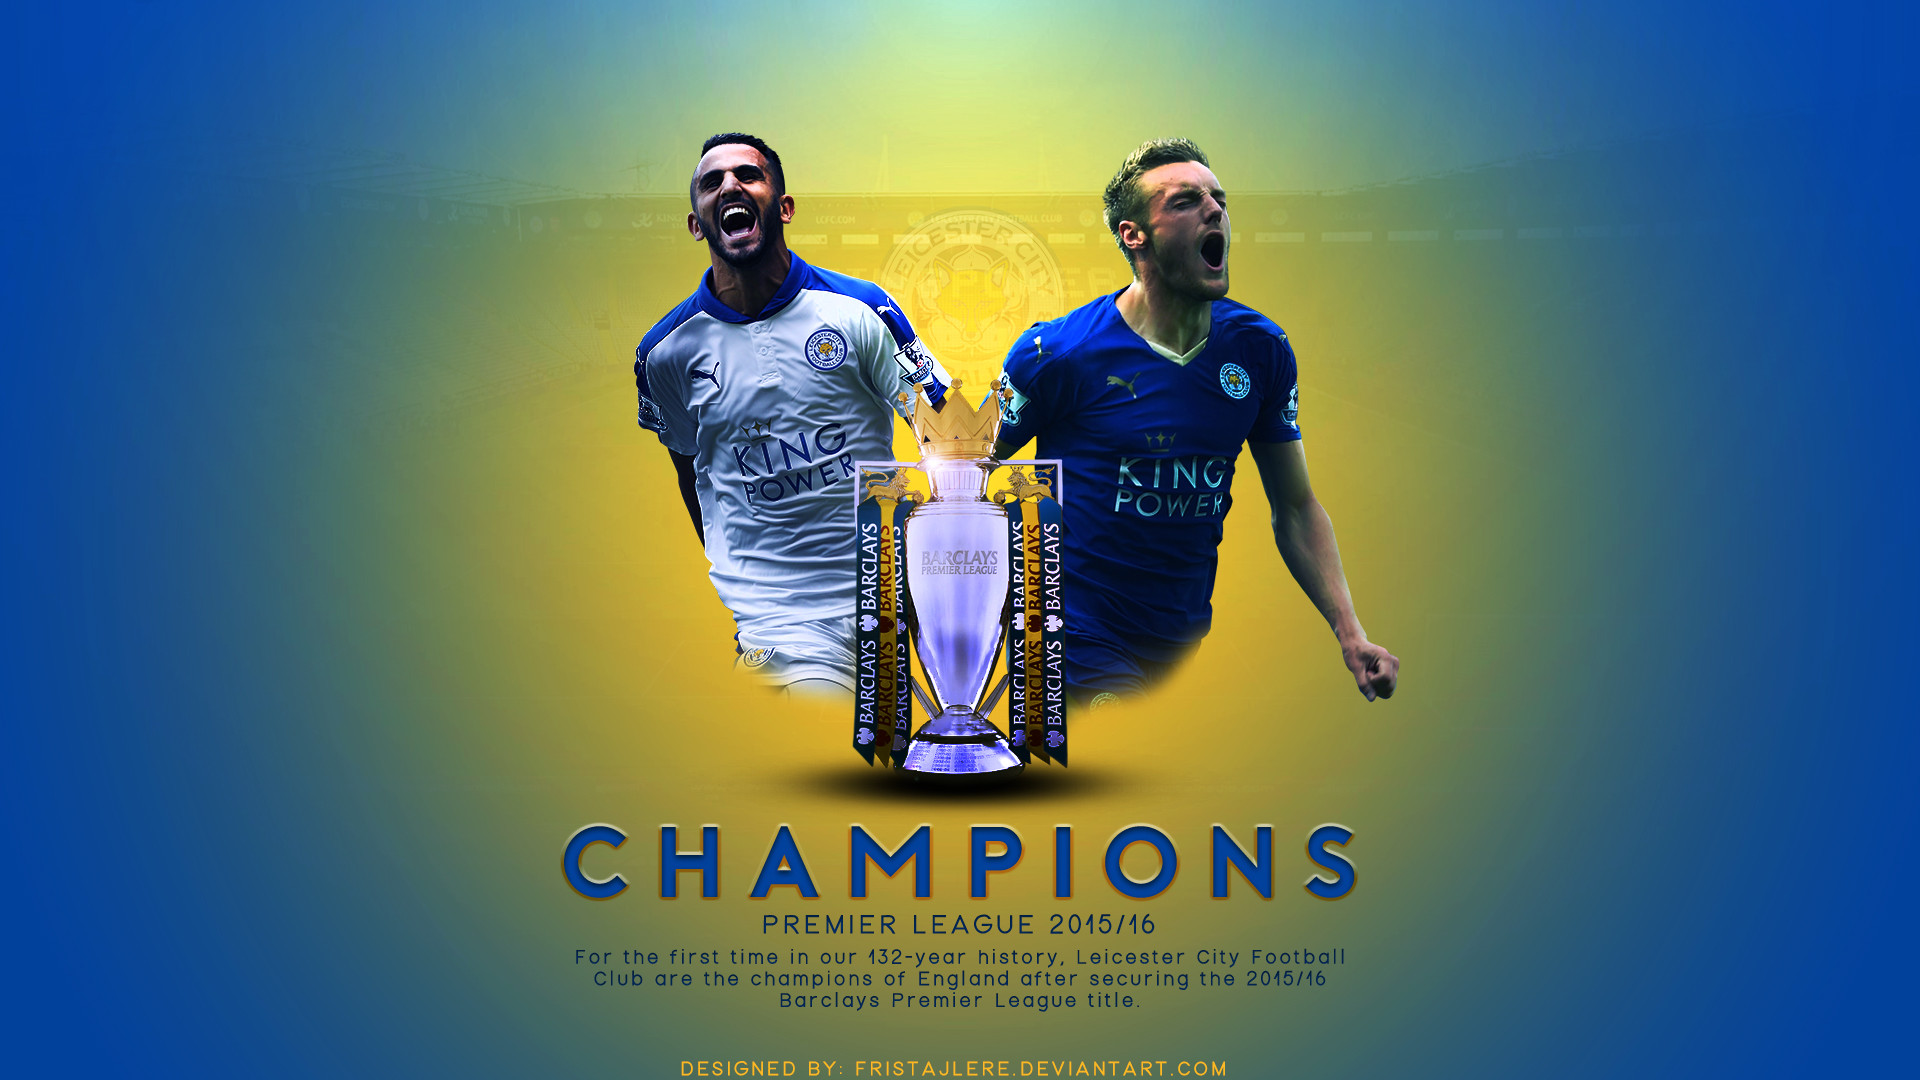 1920x1080 ... Leicester City - Champions Premier League 2015/16 by Fristajlere